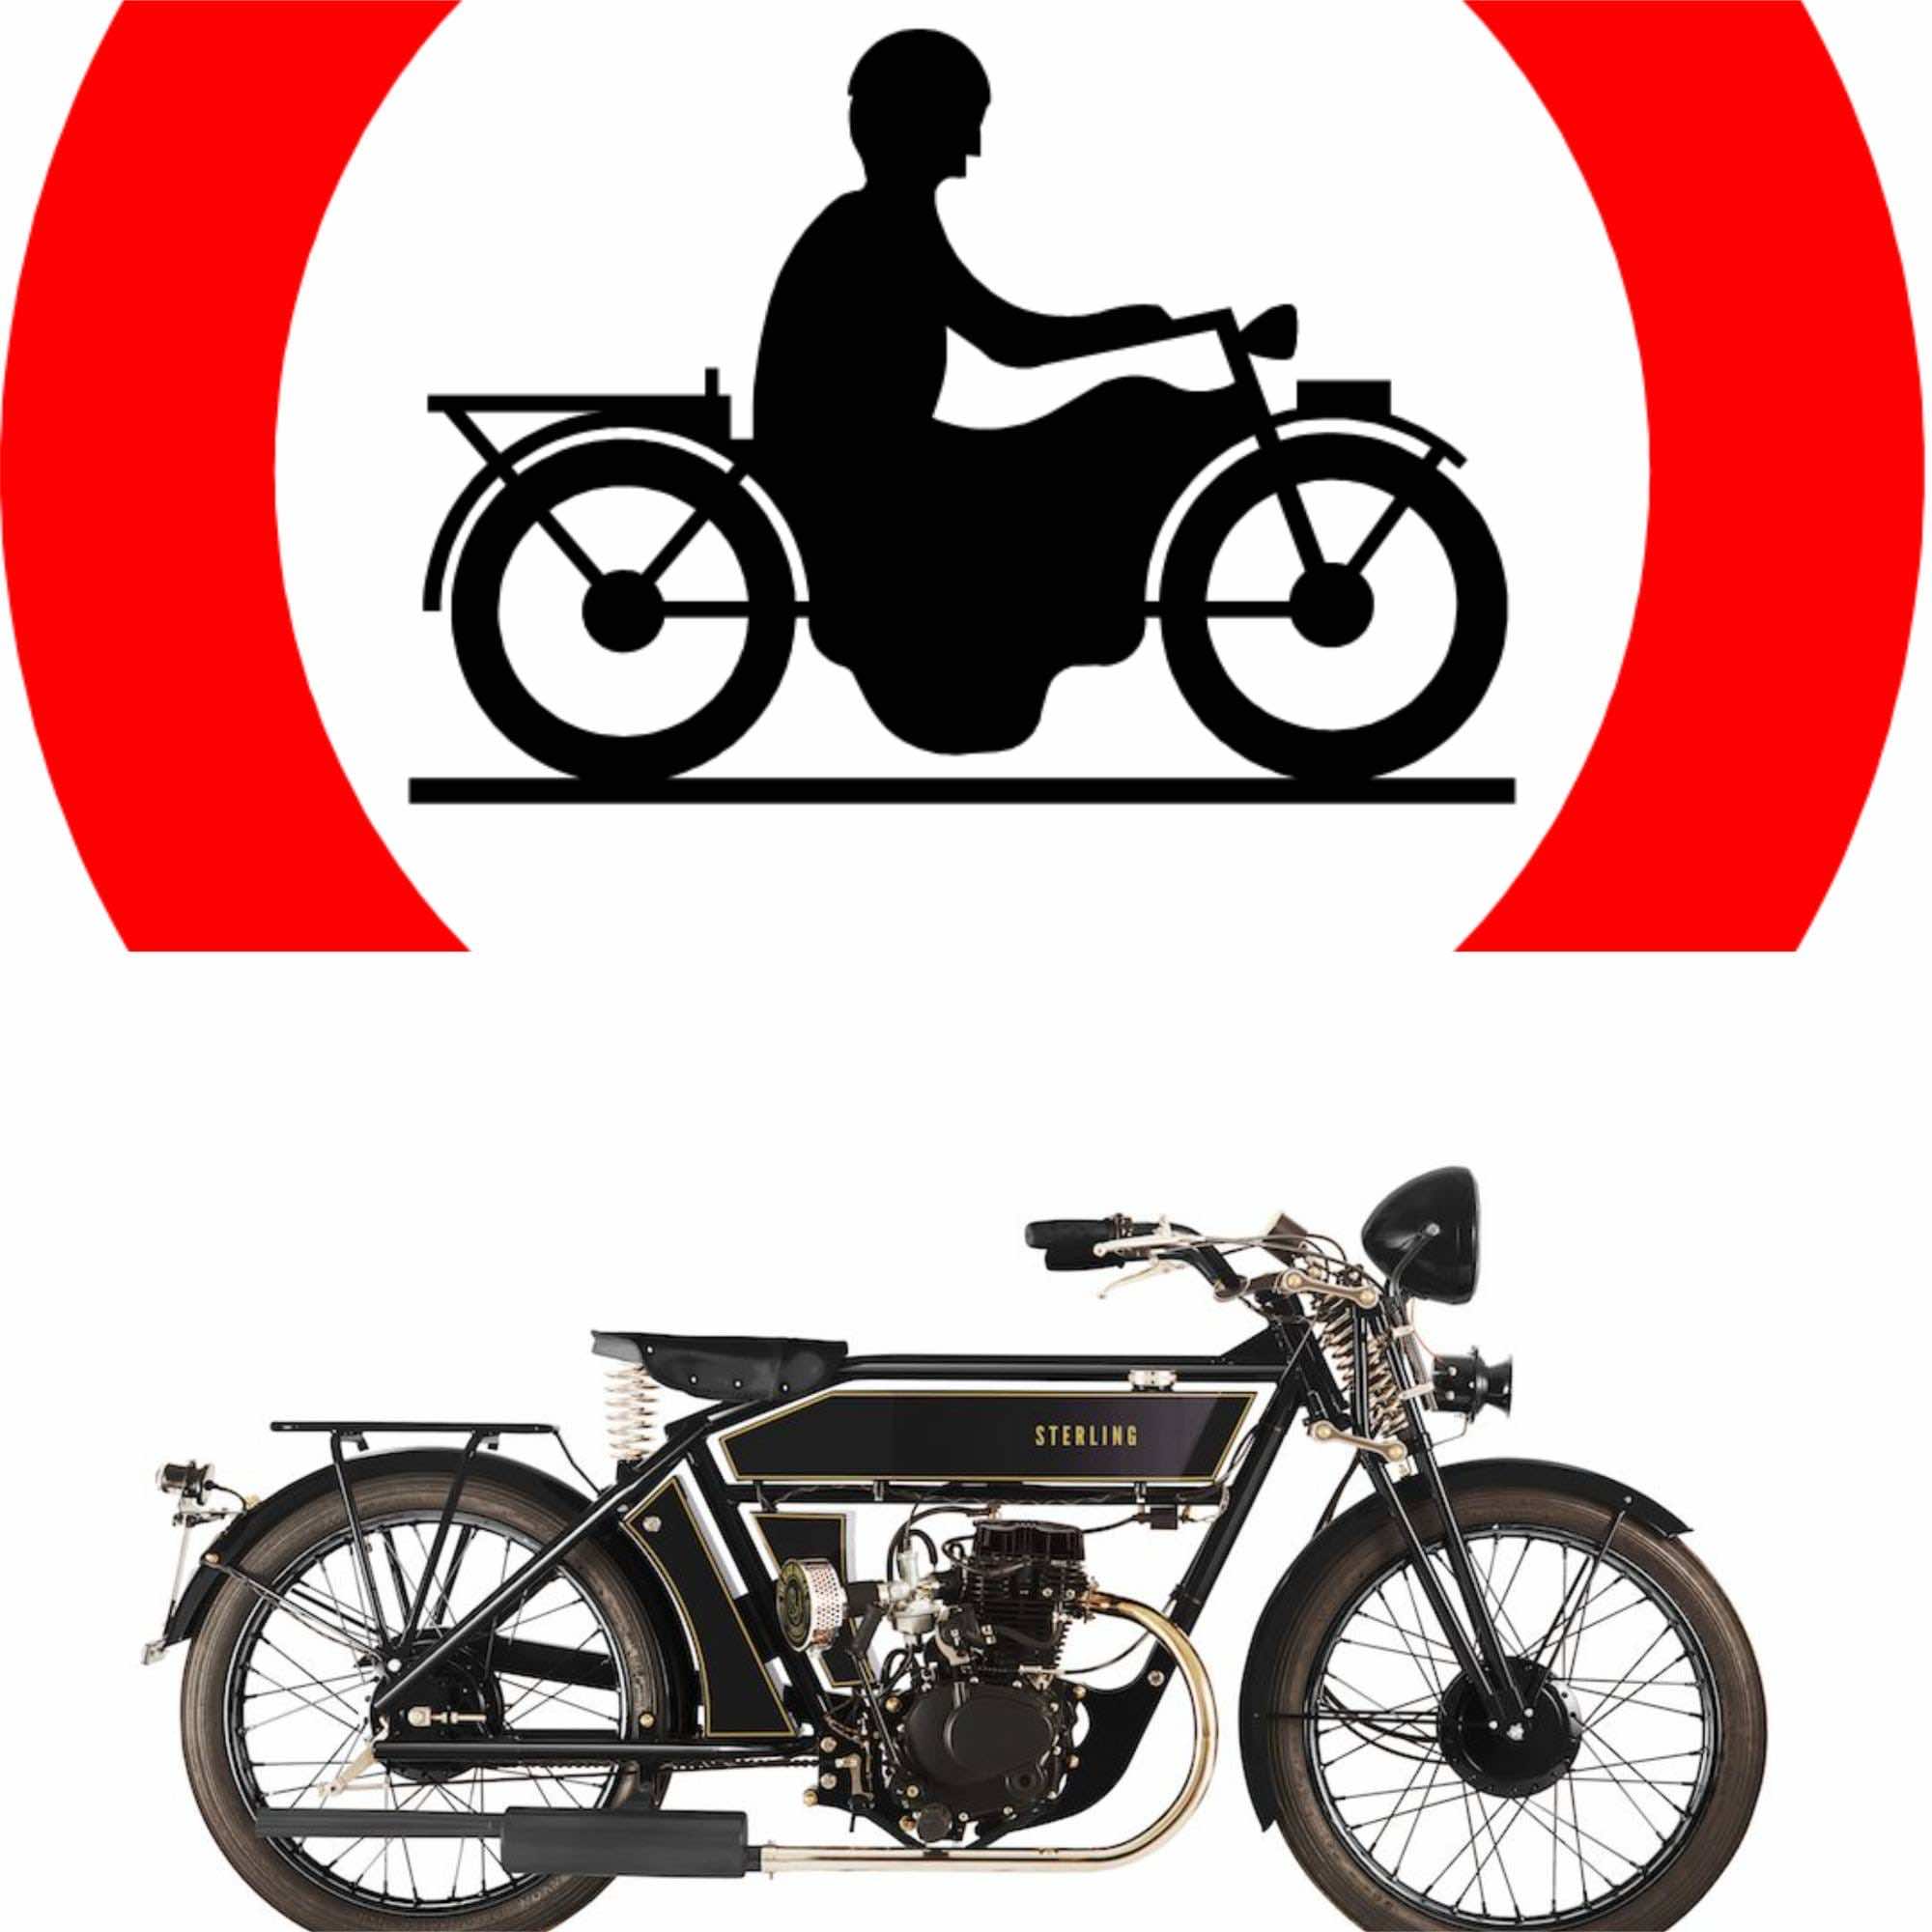 σήμανση απαγόρευσης μοτοσικλέτας και μοτοσικλέτα 